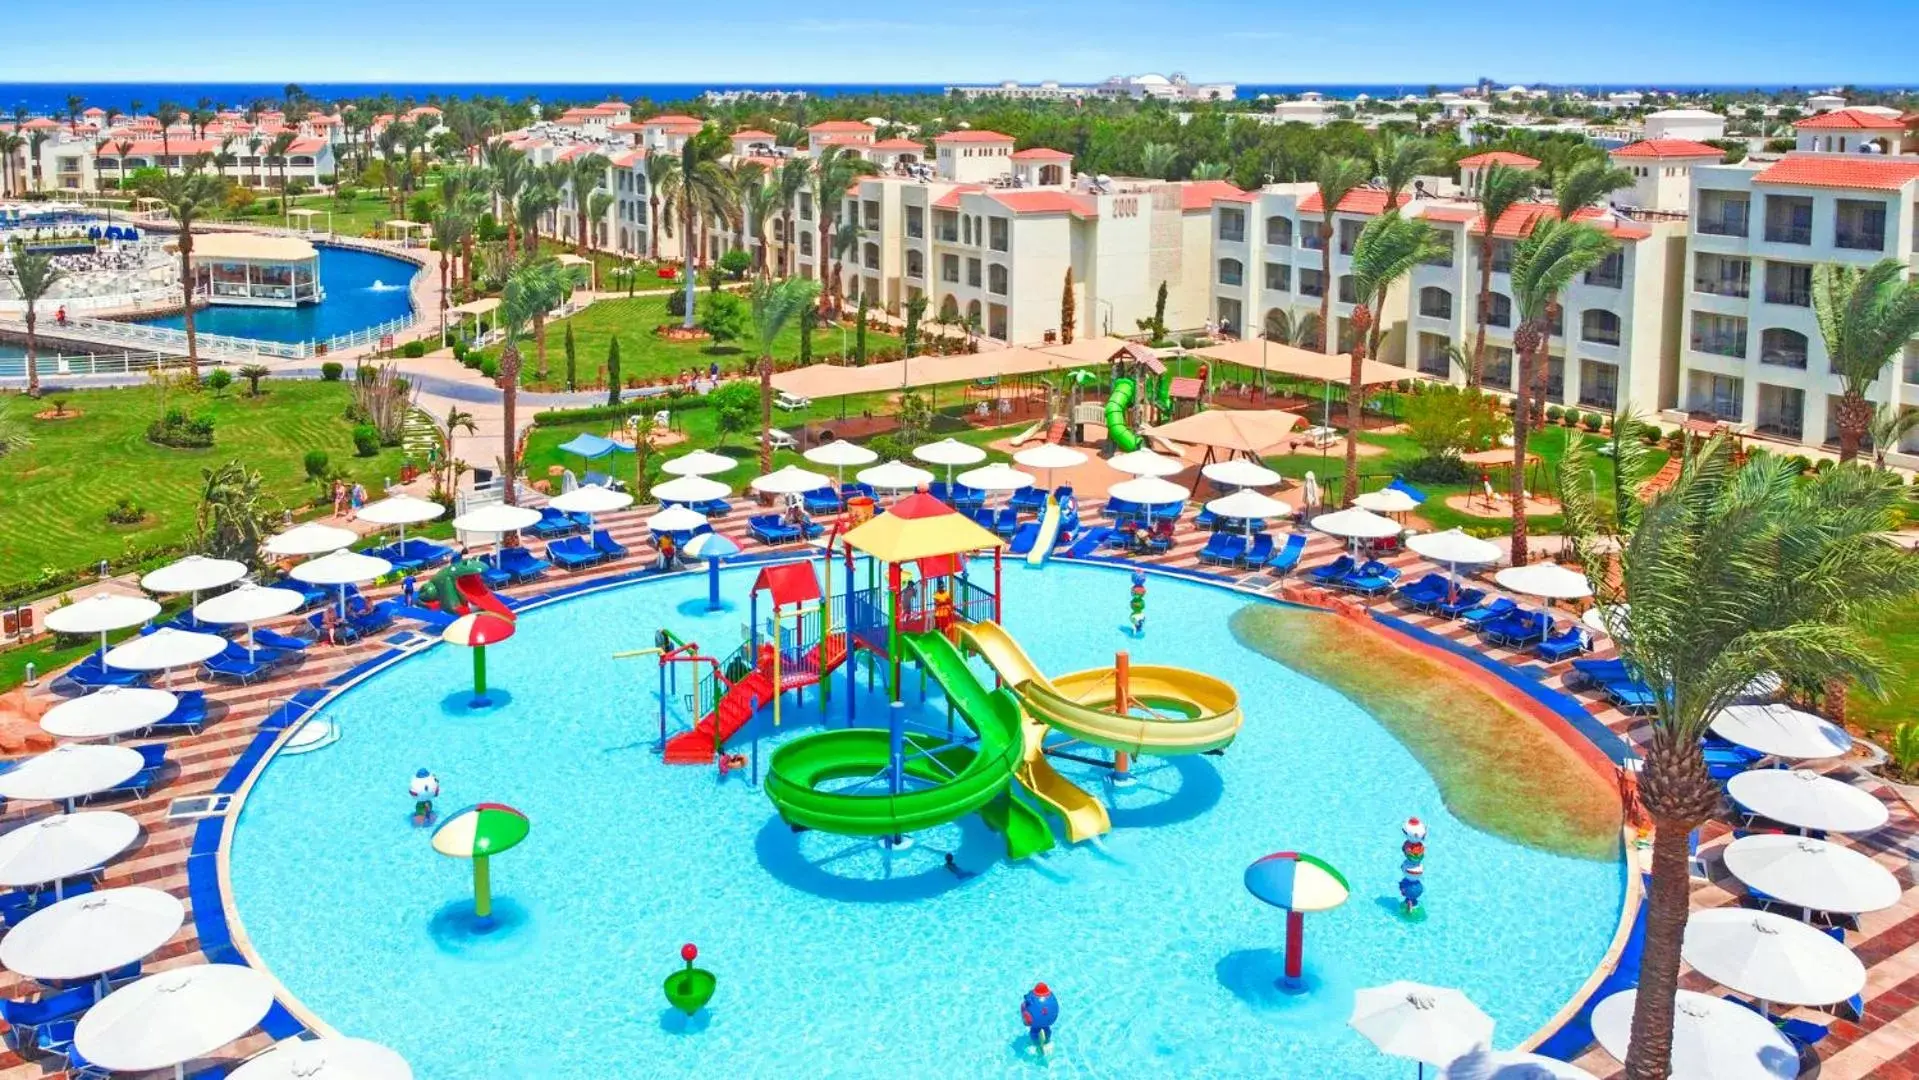 Aqua park, Pool View in Pickalbatros Dana Beach Resort - Hurghada